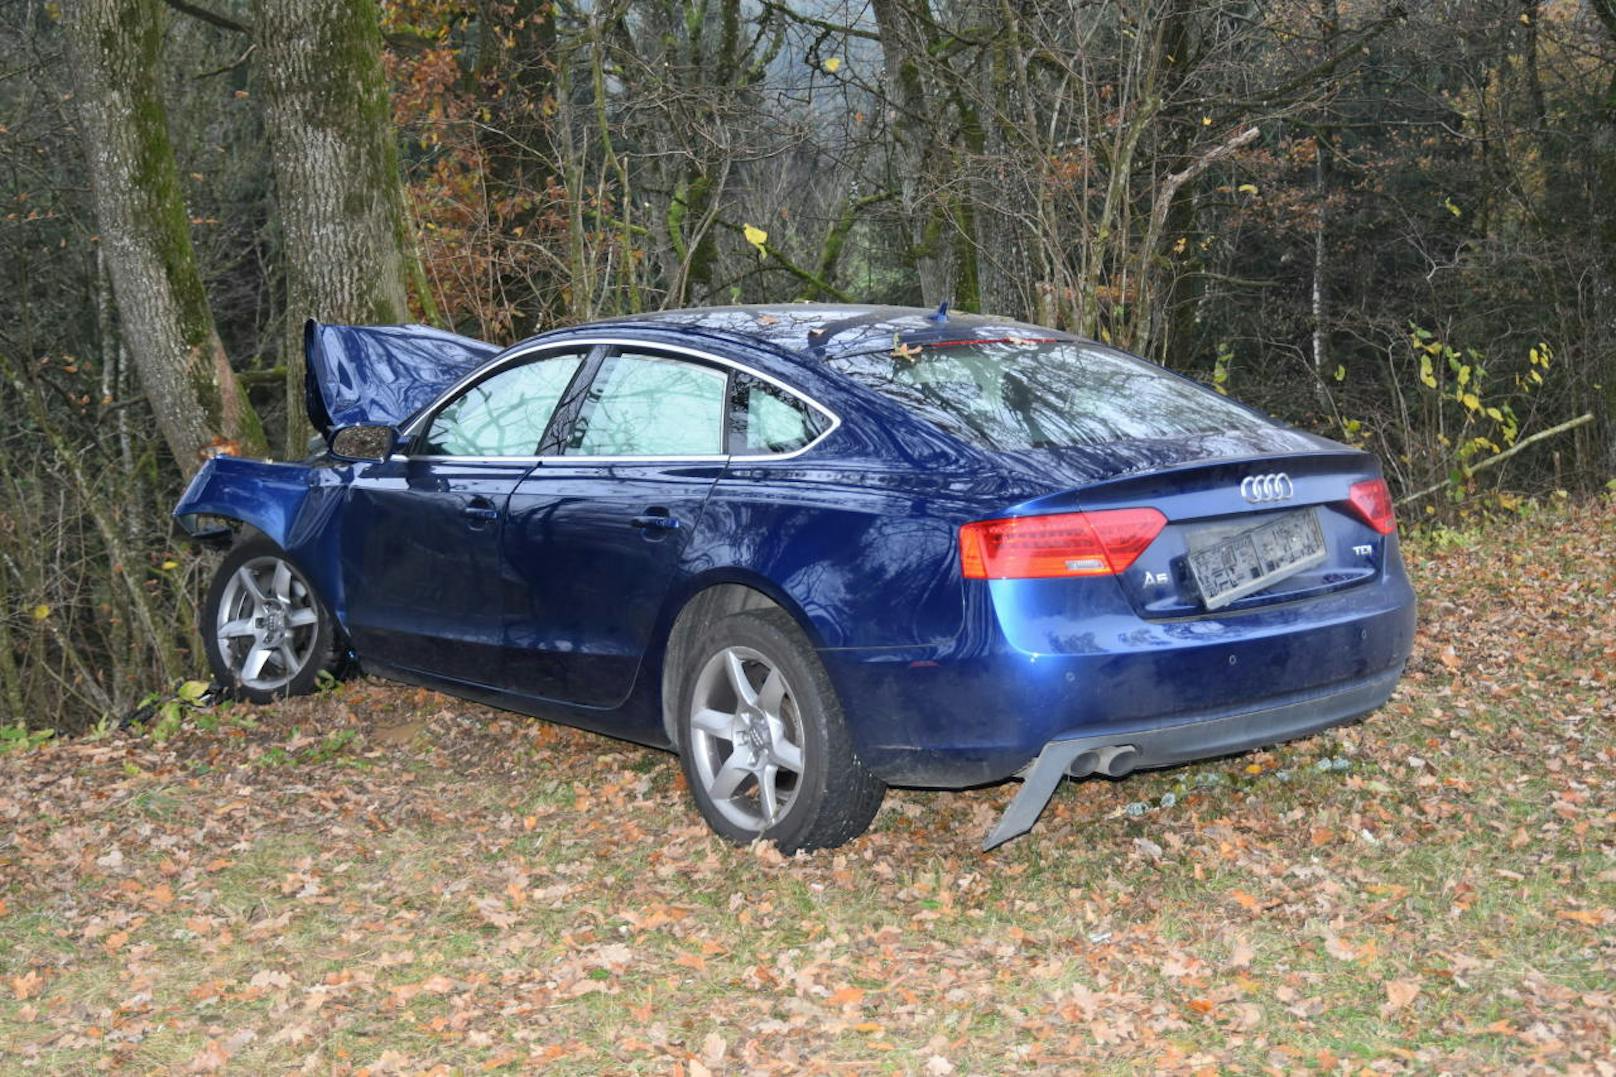 Der Lenker (23) des Audi A5 war nicht angegurtet. Er hatte keine Chance.